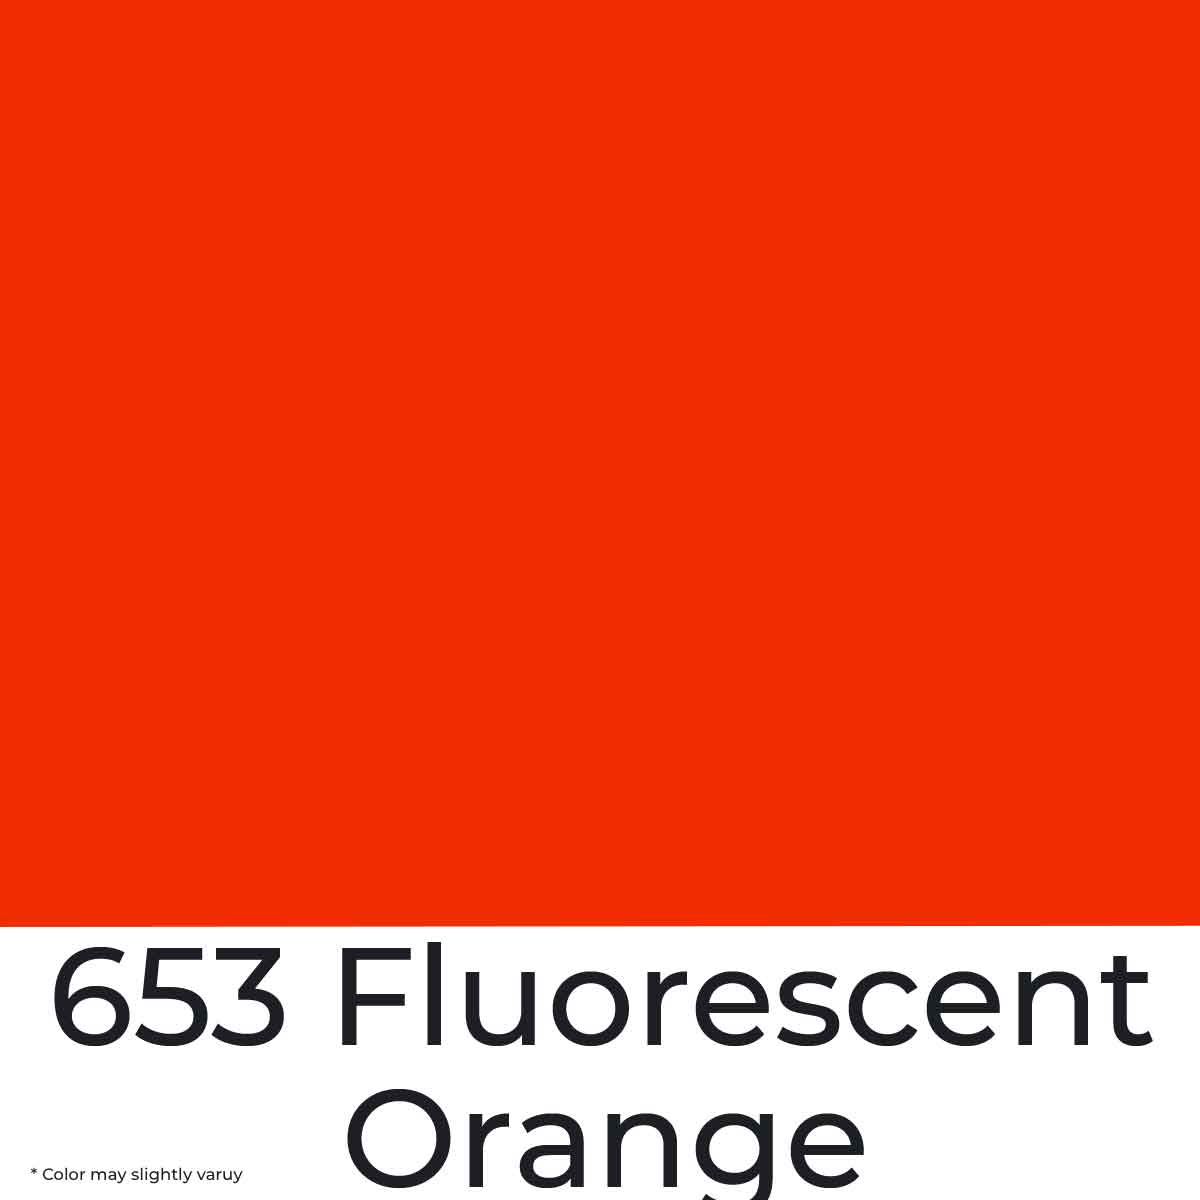 Daler Rowney Acrylic Paint - Fluorescent Orange 653 from najmaonline.com Abu Dhabi, Dubai - UAE